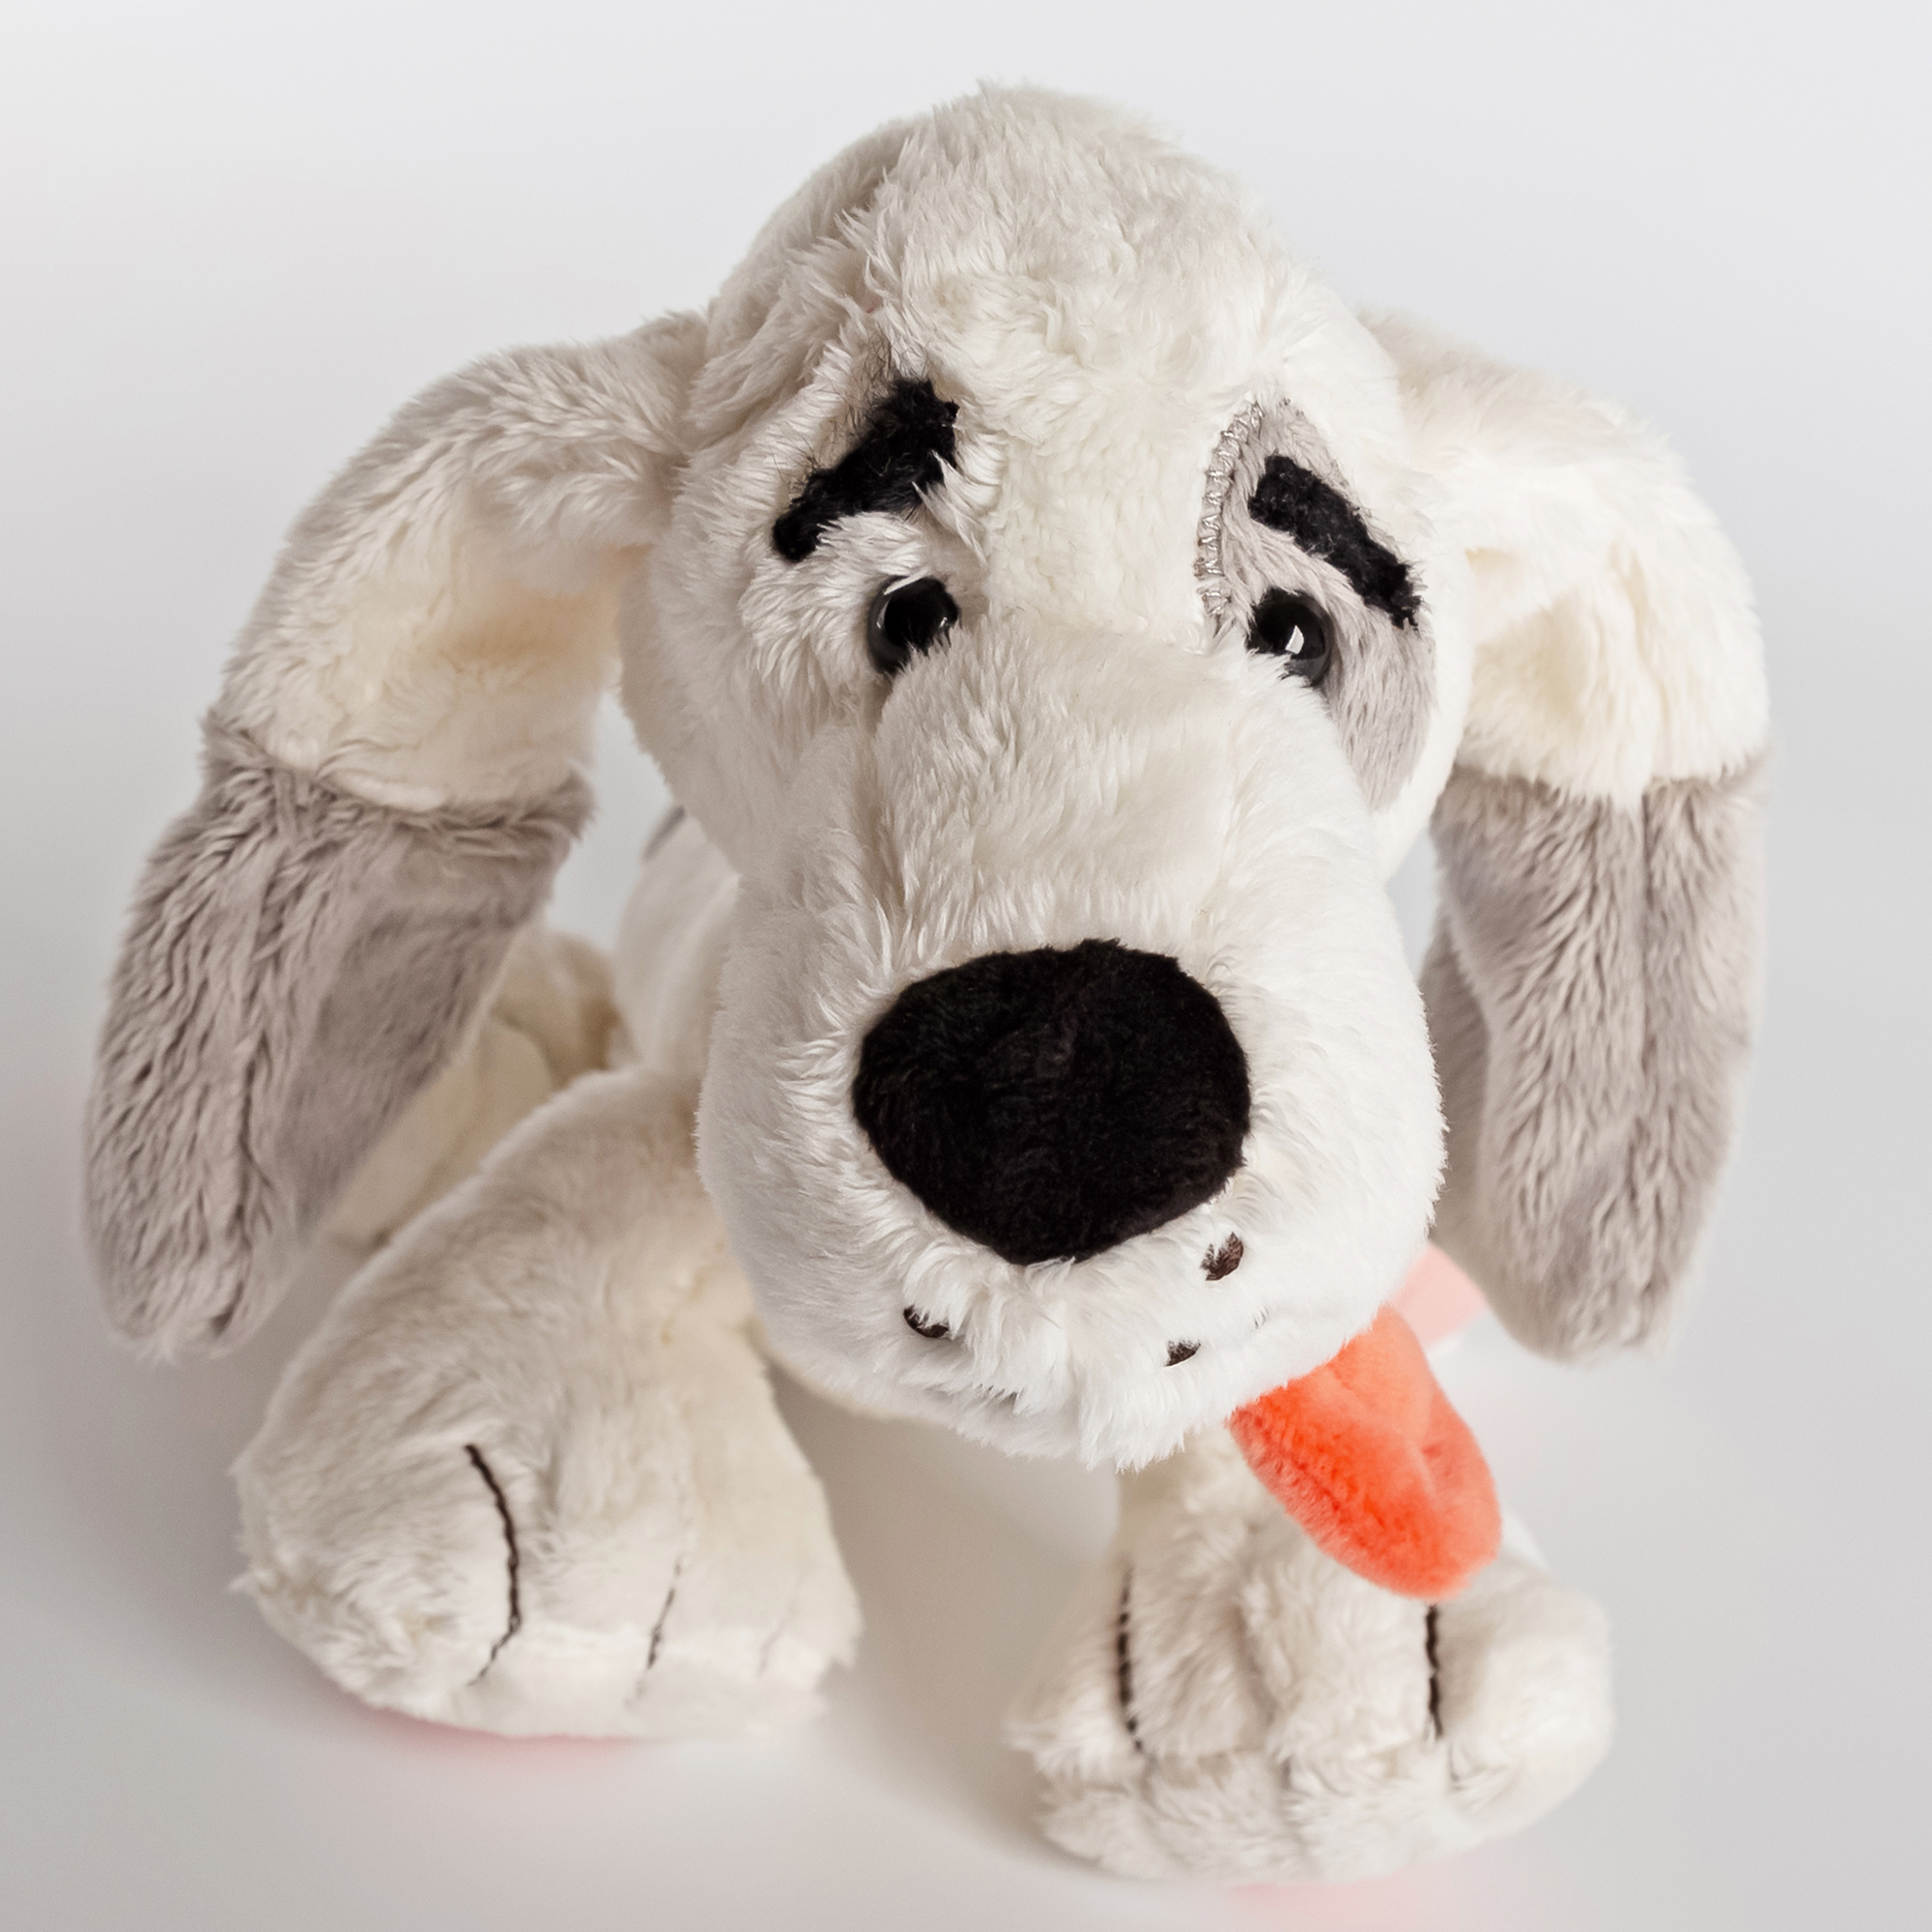 Floppy-eared plush dog Helmut